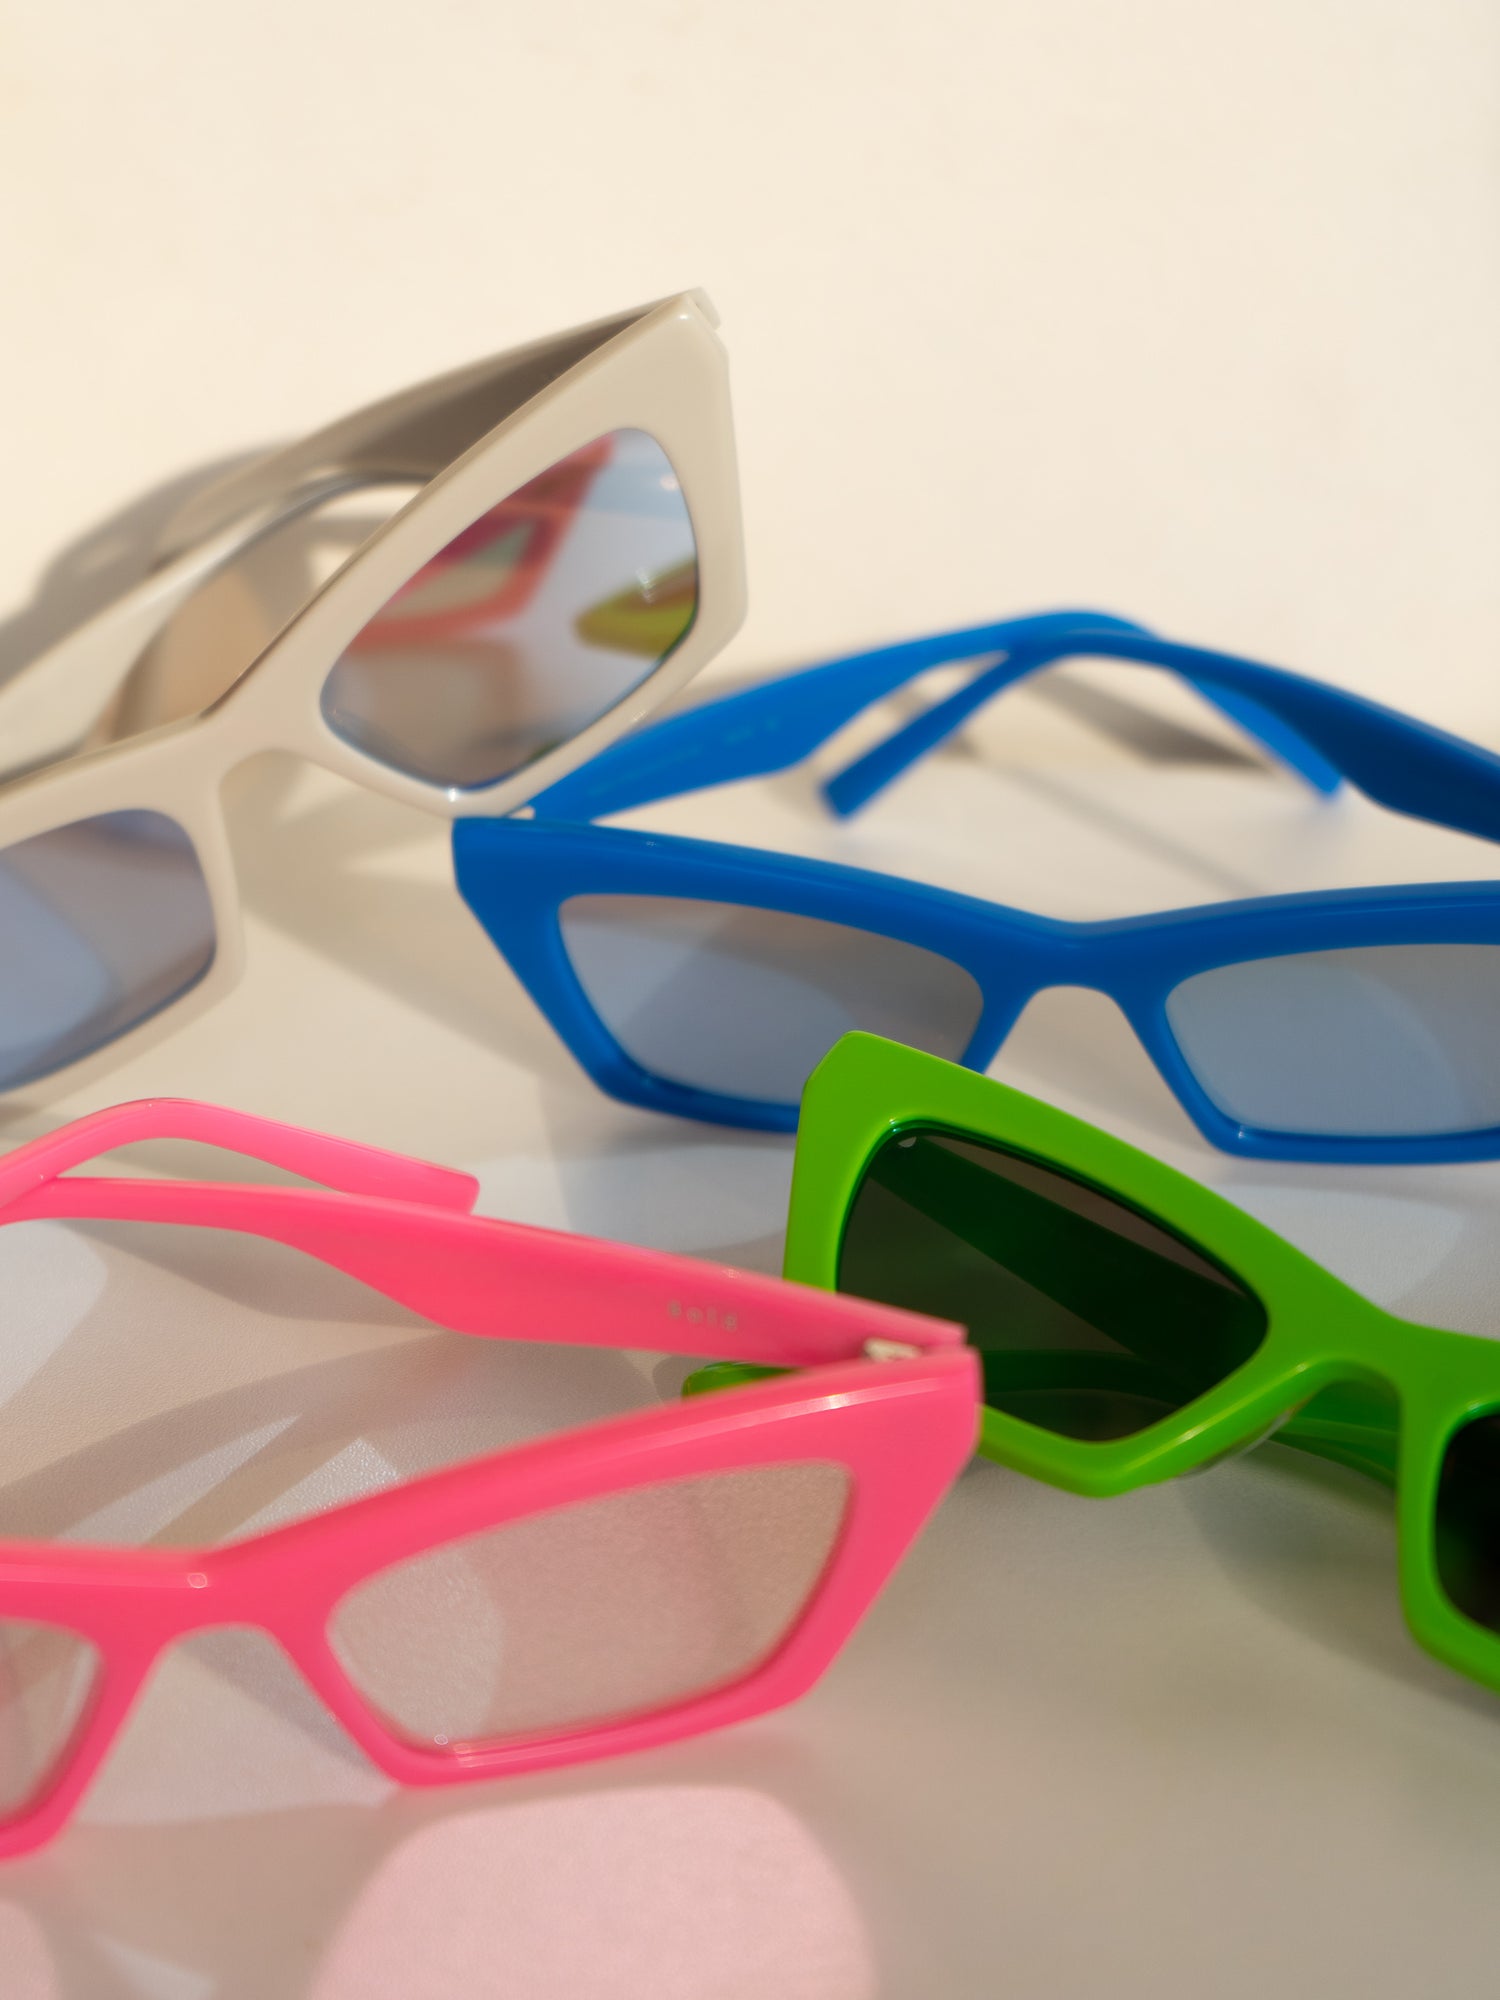 Occhiali da sole Modello Bold: montatura con lenti specchiate con riflesso. Unisex e adatto alla maggior parte delle forme del viso. Le lenti sono antiriflesso e con protezione UV.